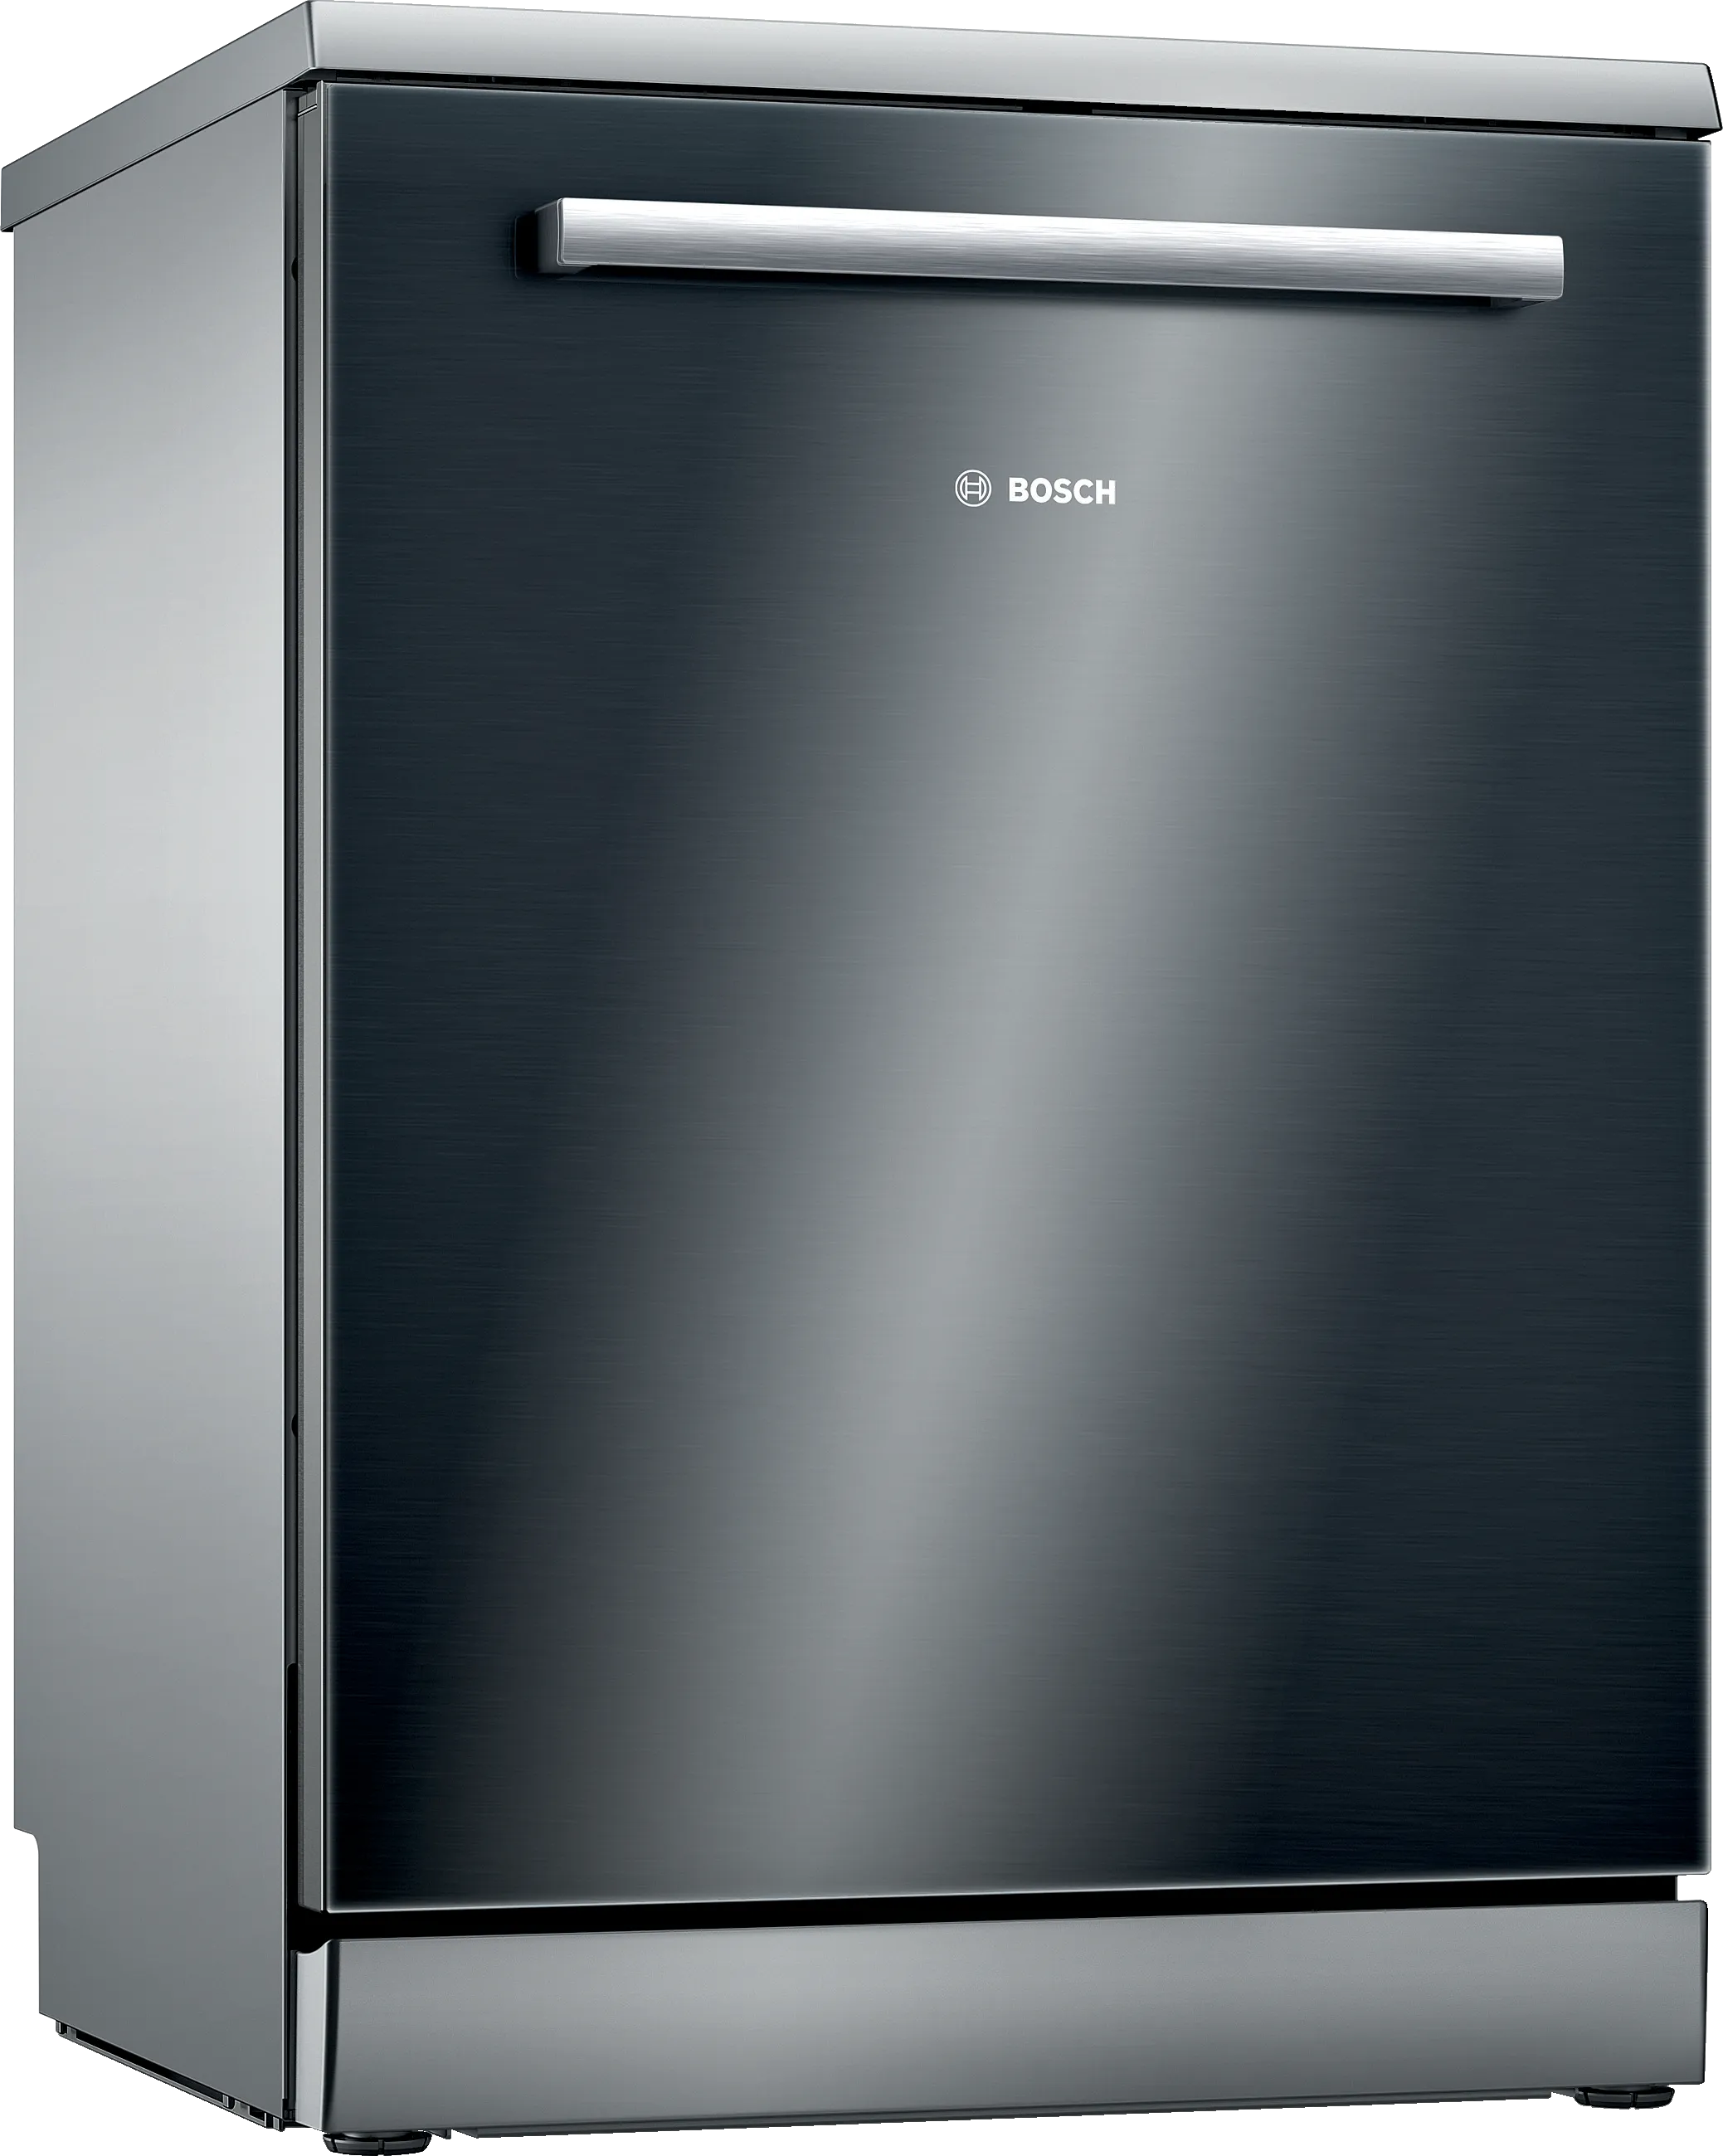 Series 4 free-standing dishwasher 60 cm Black 